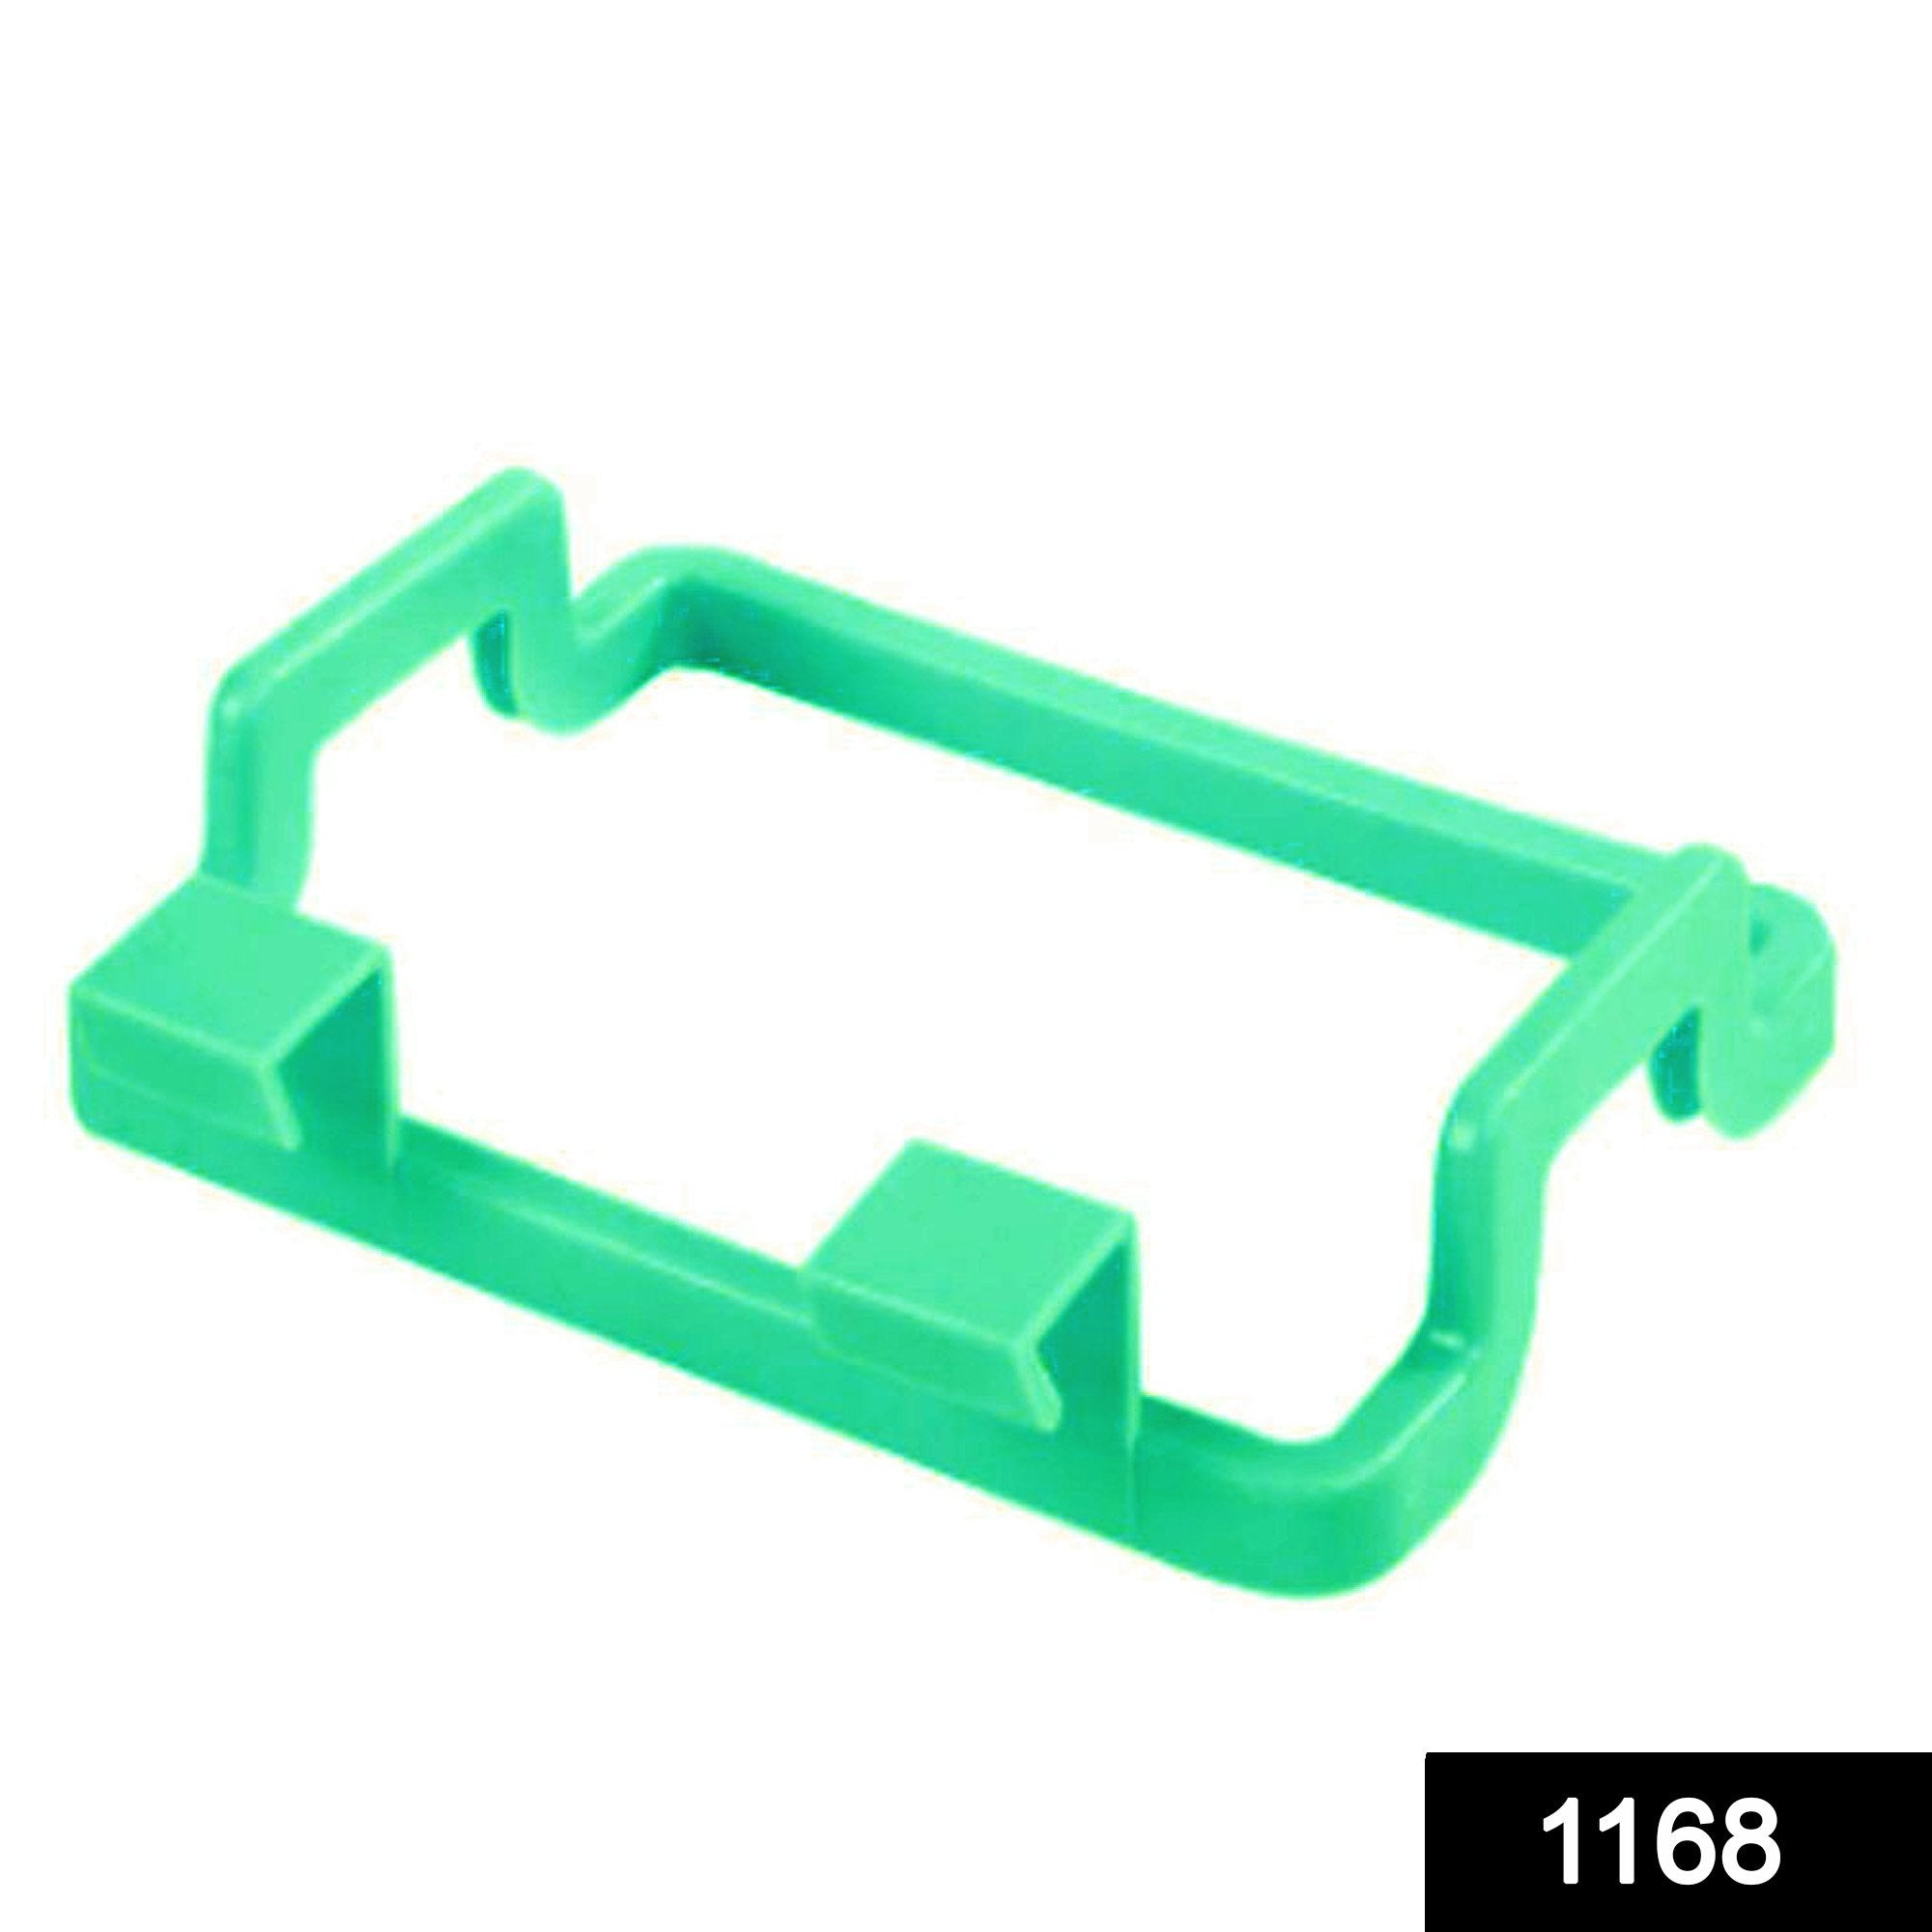 1168 Kitchen Plastic Garbage Bag Rack Holder ( Green Color ) - SkyShopy